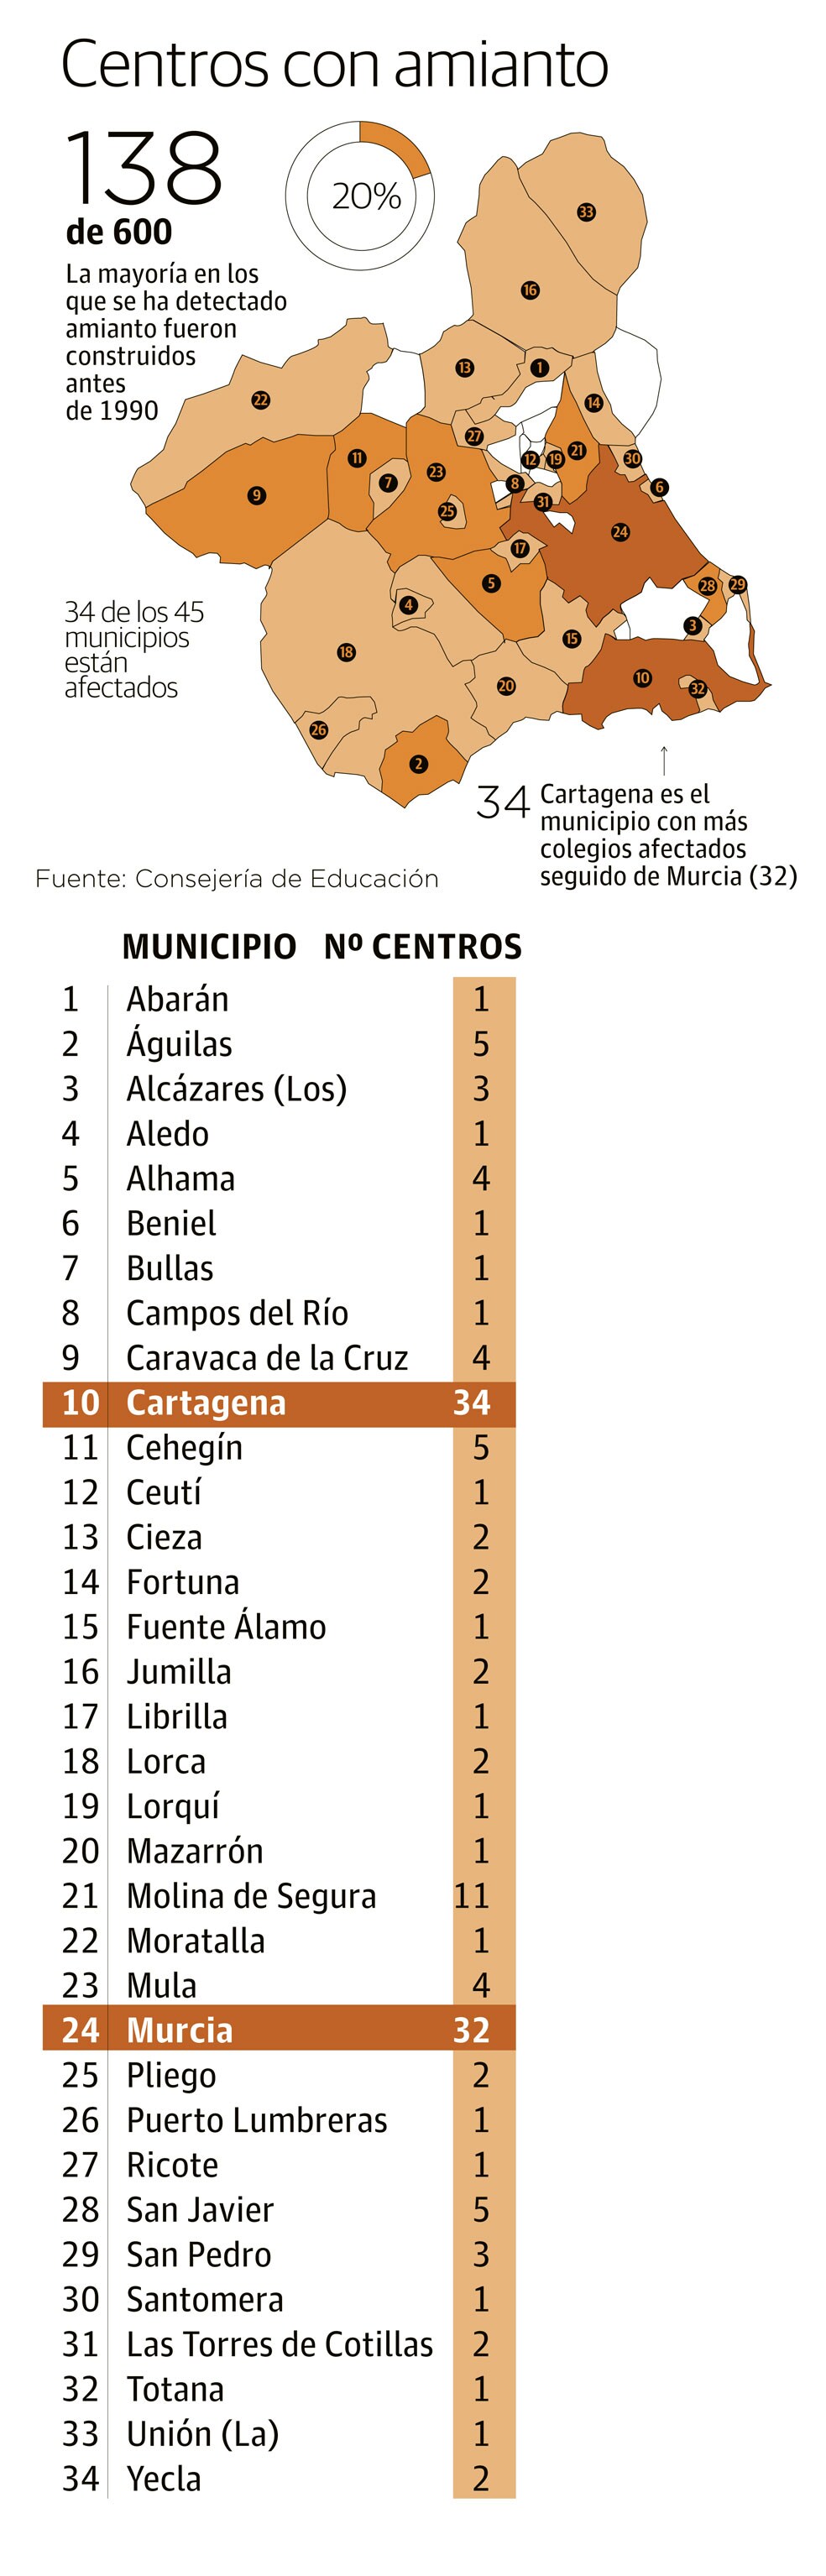 Centros con amianto en la Región de Murcia